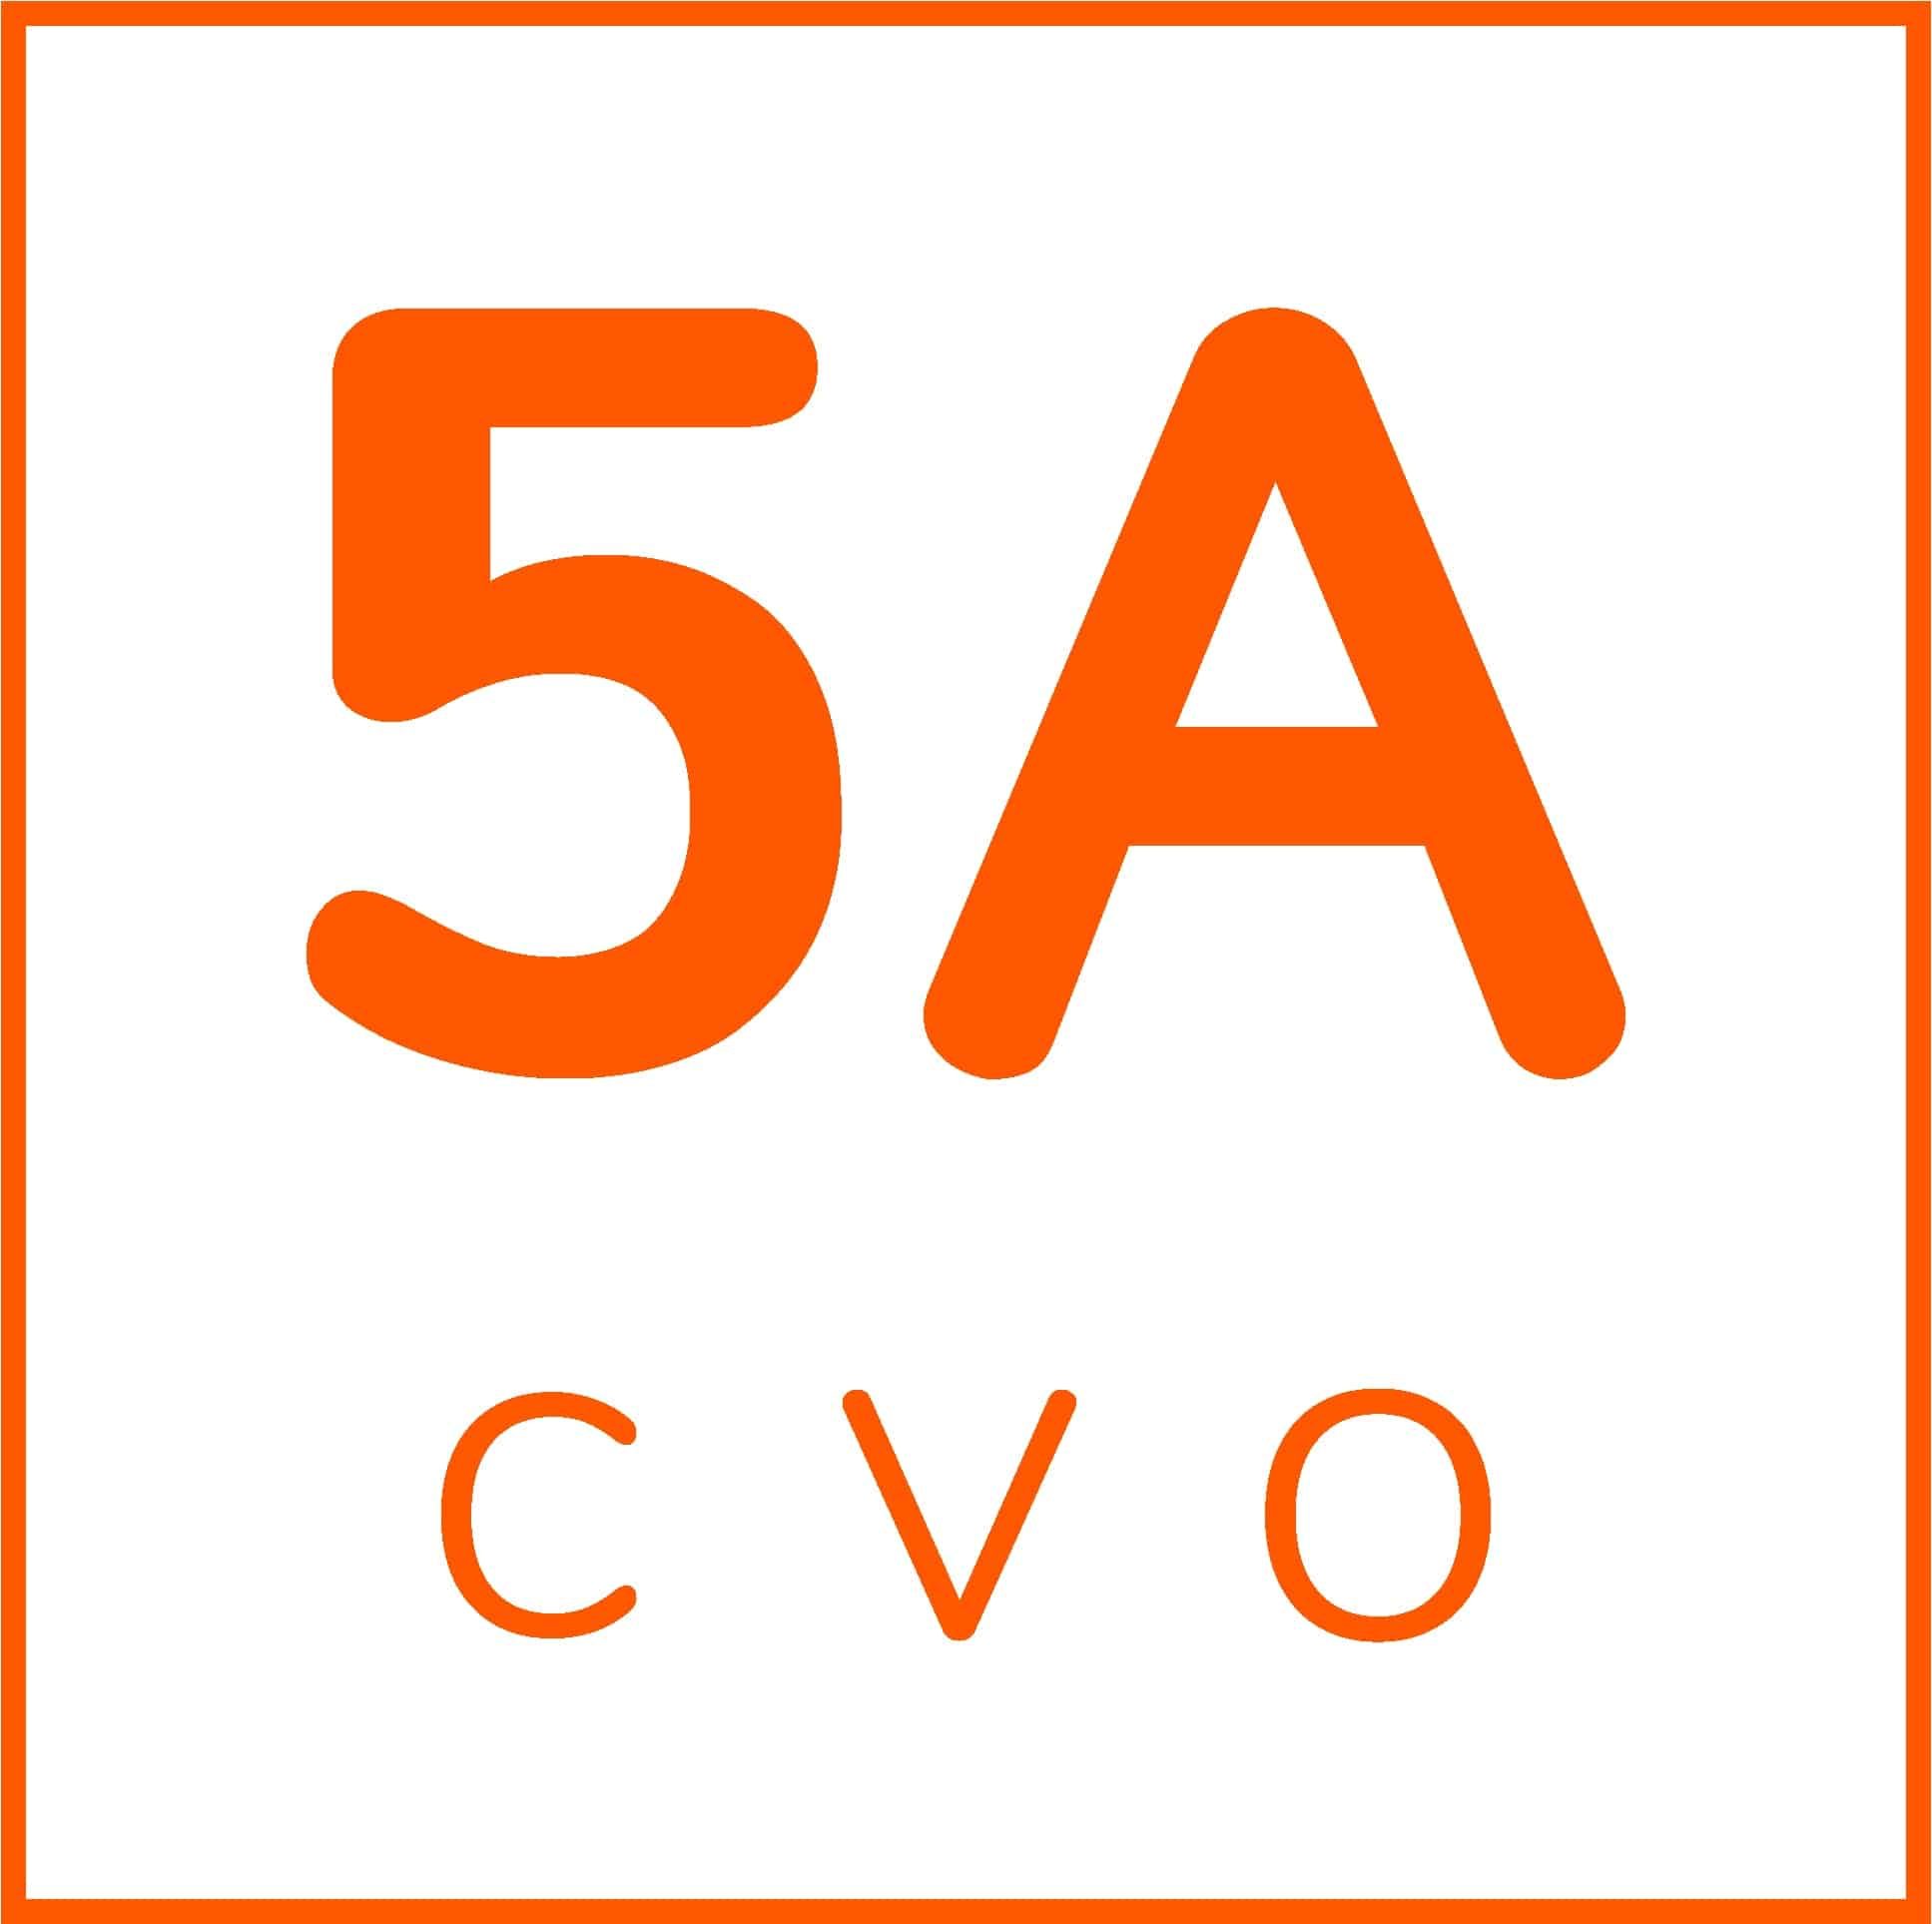 5Acvo.com